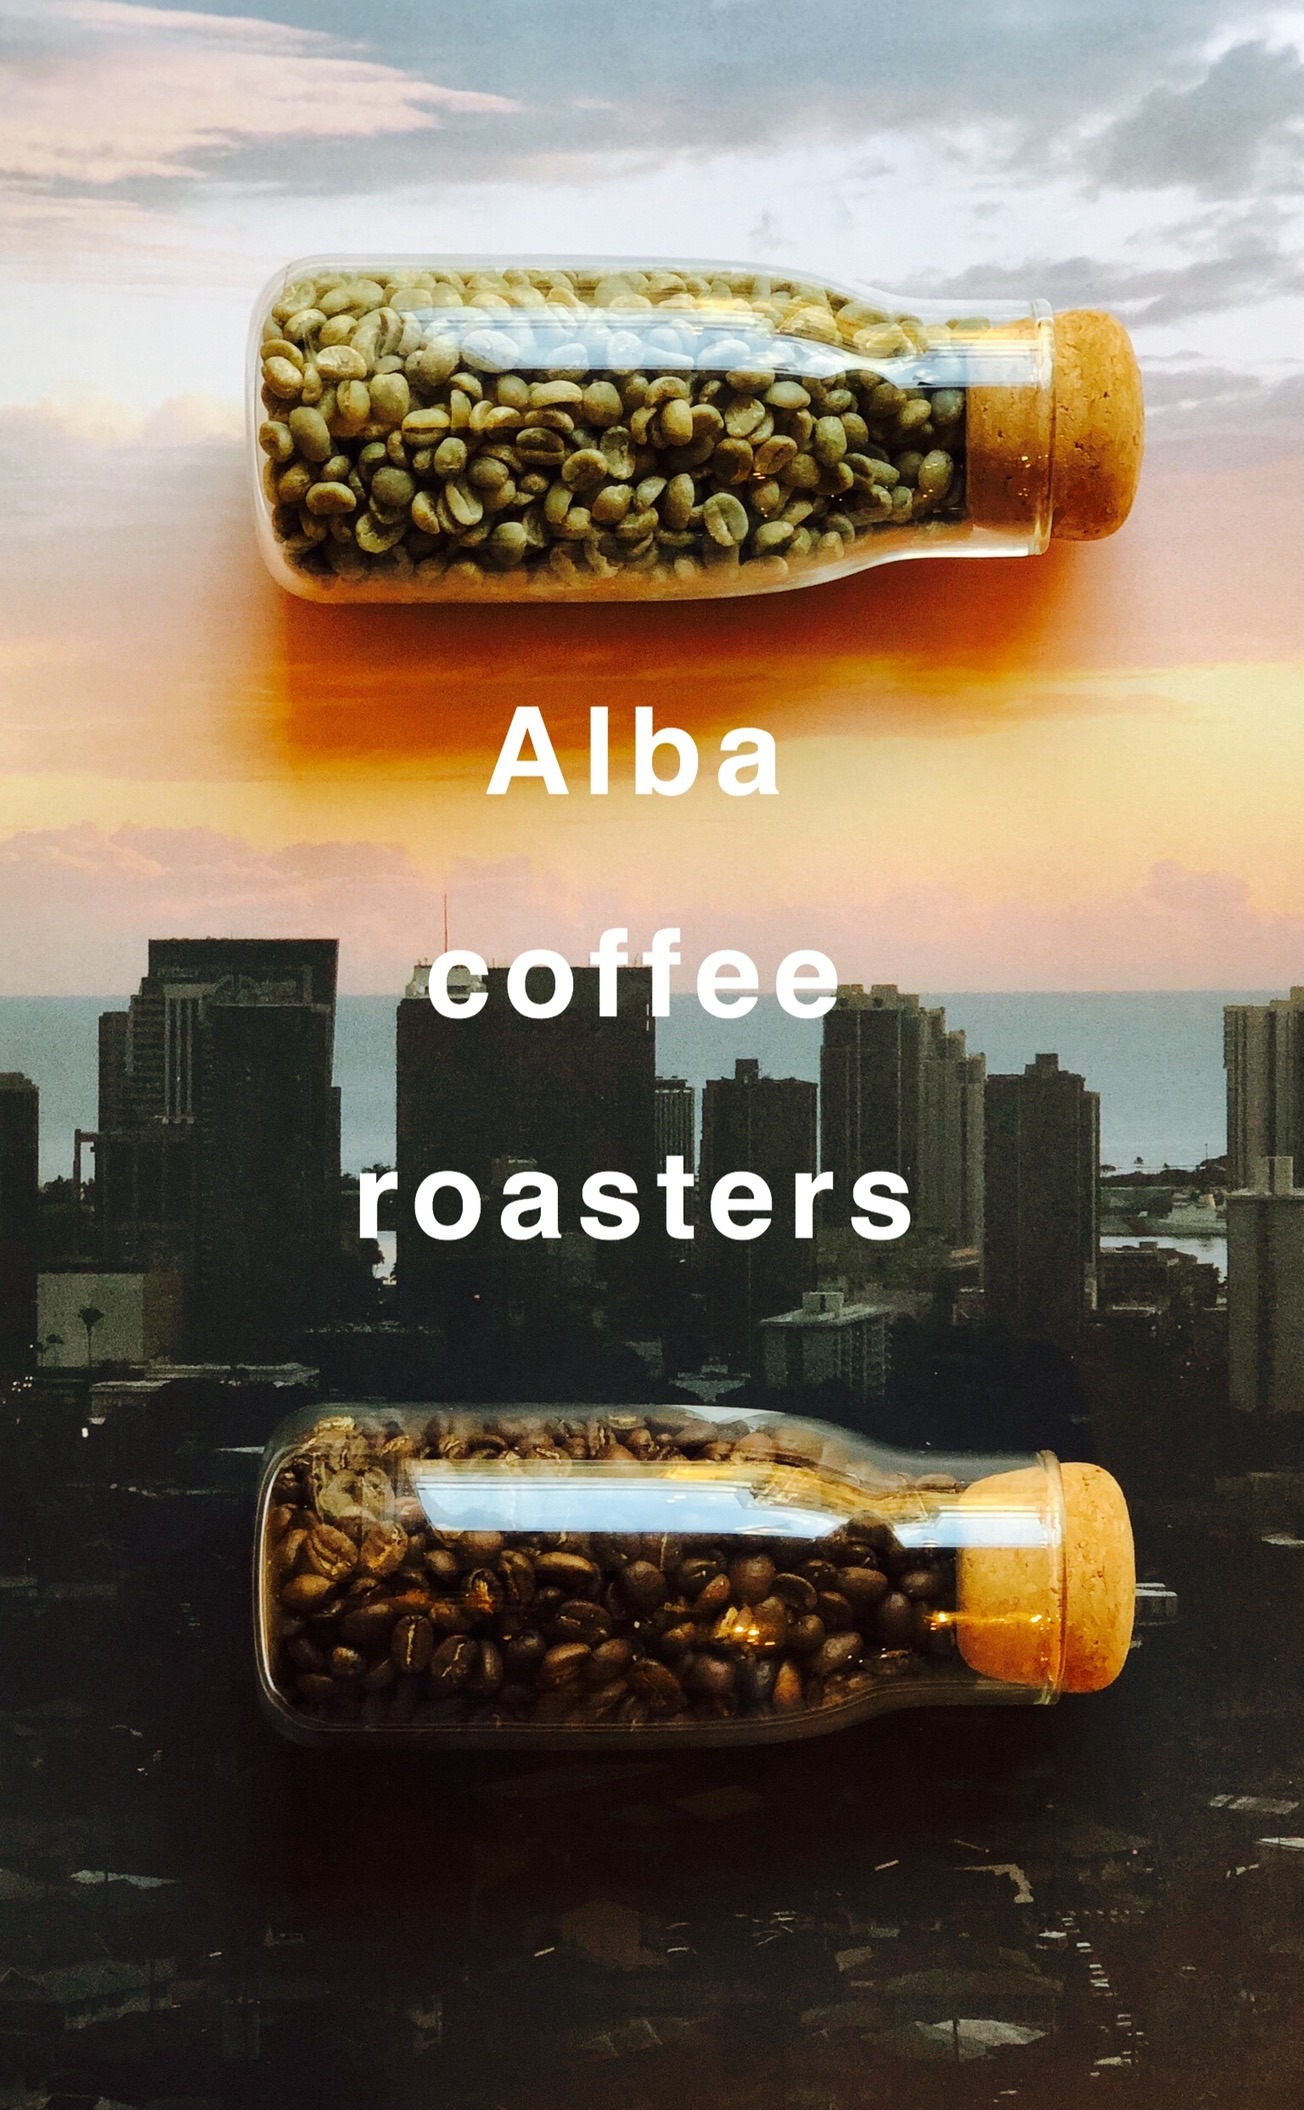 Alba coffee roasters